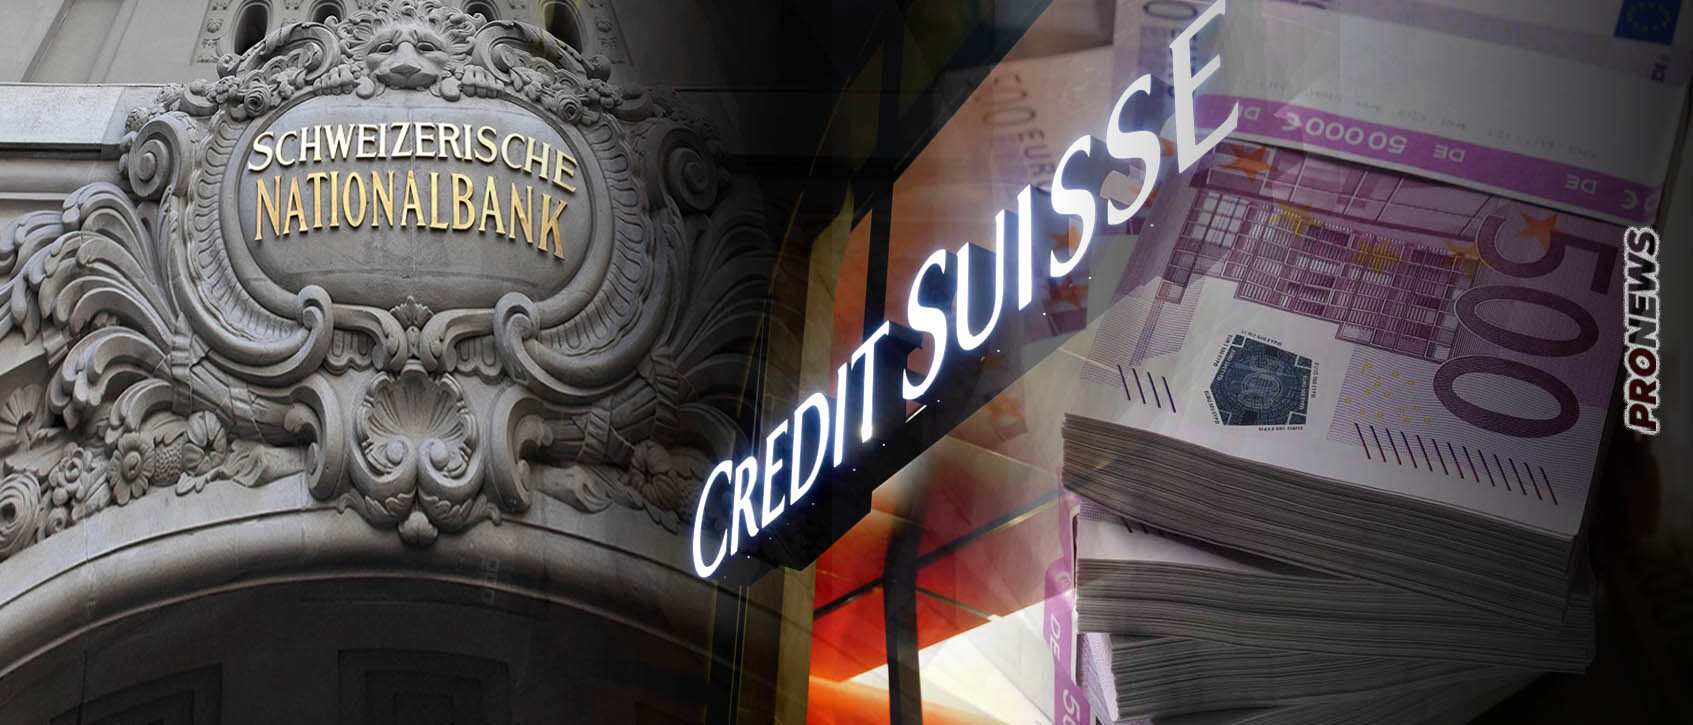 Η Κεντρική Τράπεζα της Ελβετίας σώζει (προς το παρόν) την Credit Suisse με «σωσίβιο» 50 δισ. ευρώ